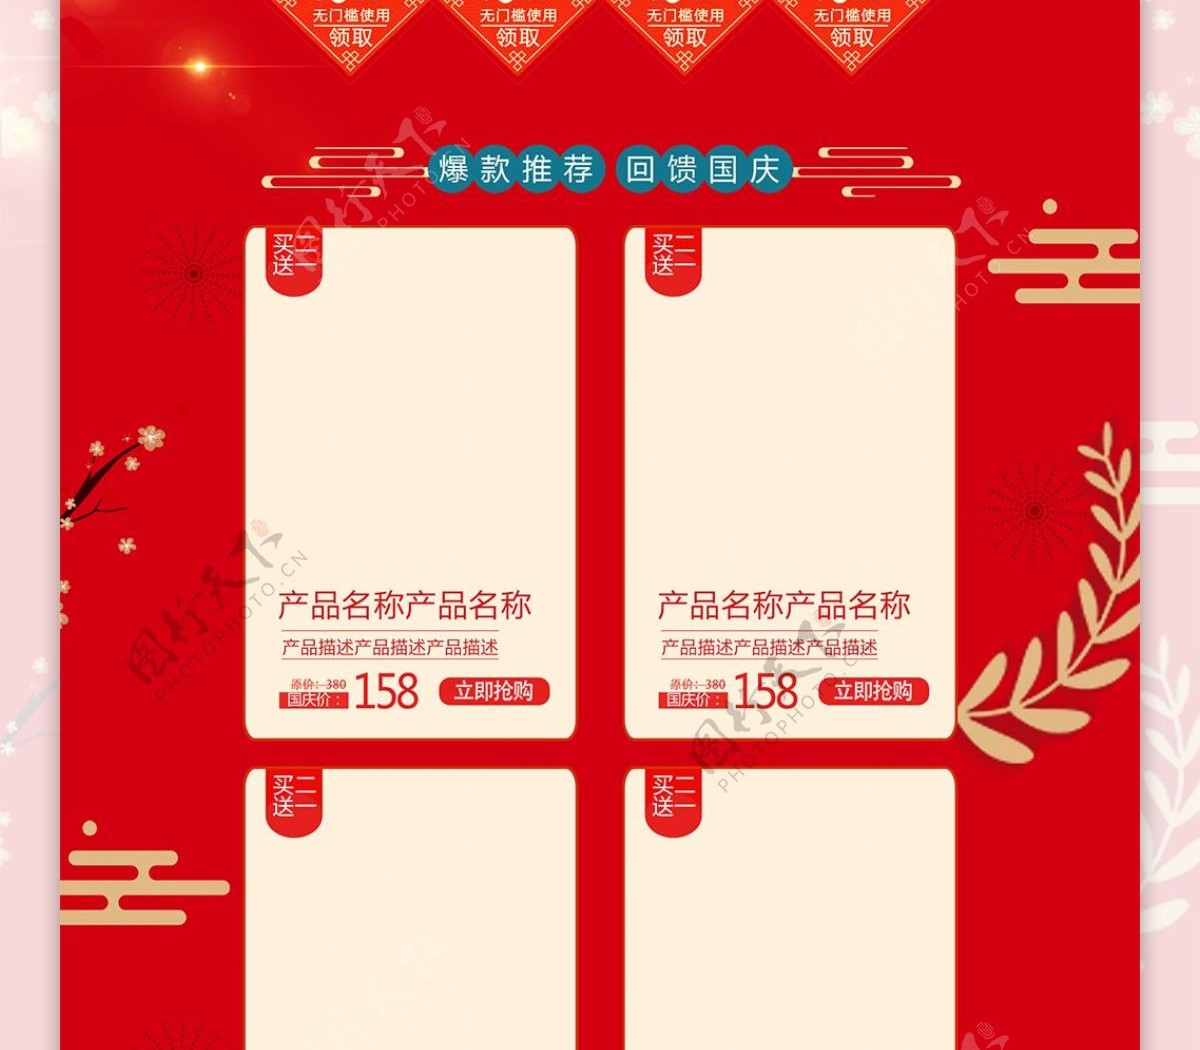 红色喜庆国庆节中秋节双节同庆淘宝首页模板